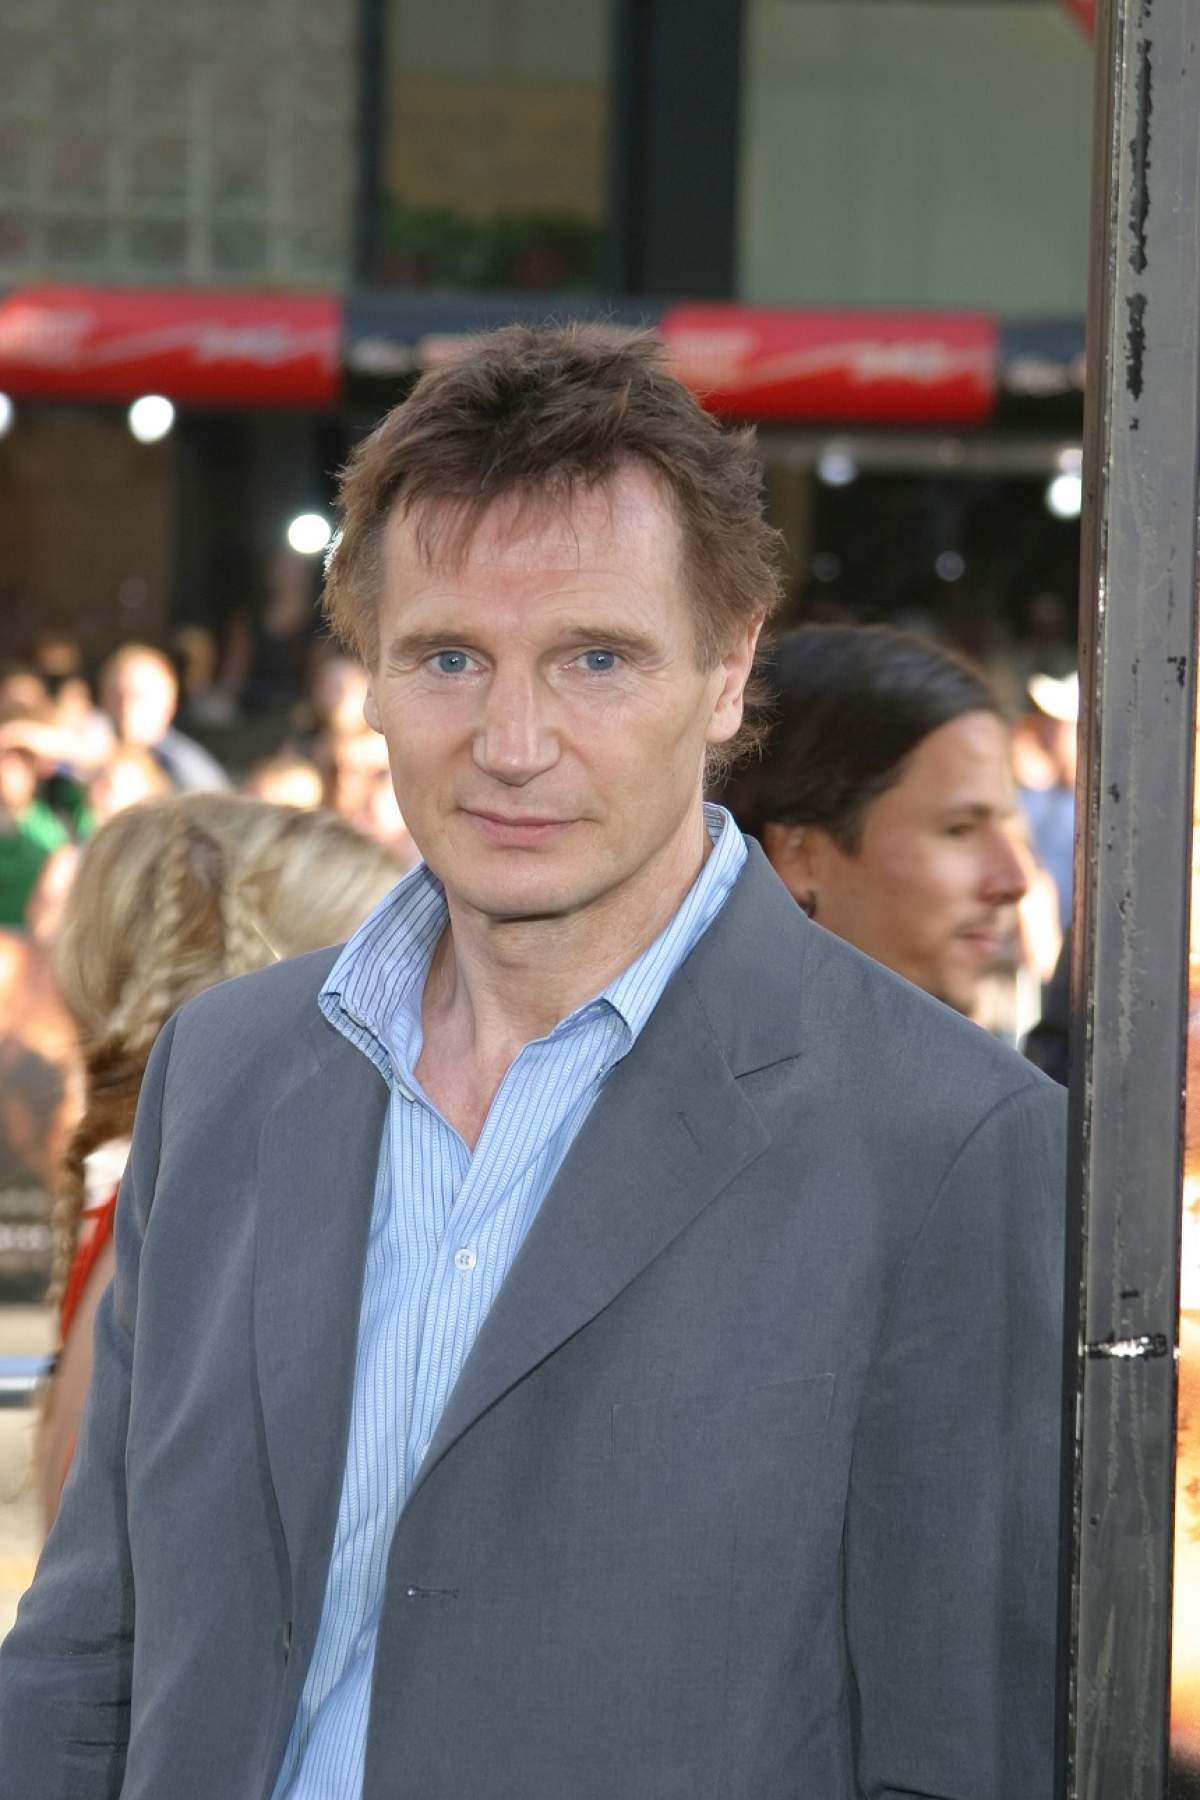 Val de reacții la Hollywood, după ce Liam Neeson a zis că a avut să ucidă un om. "Un rasist fără scrupule"